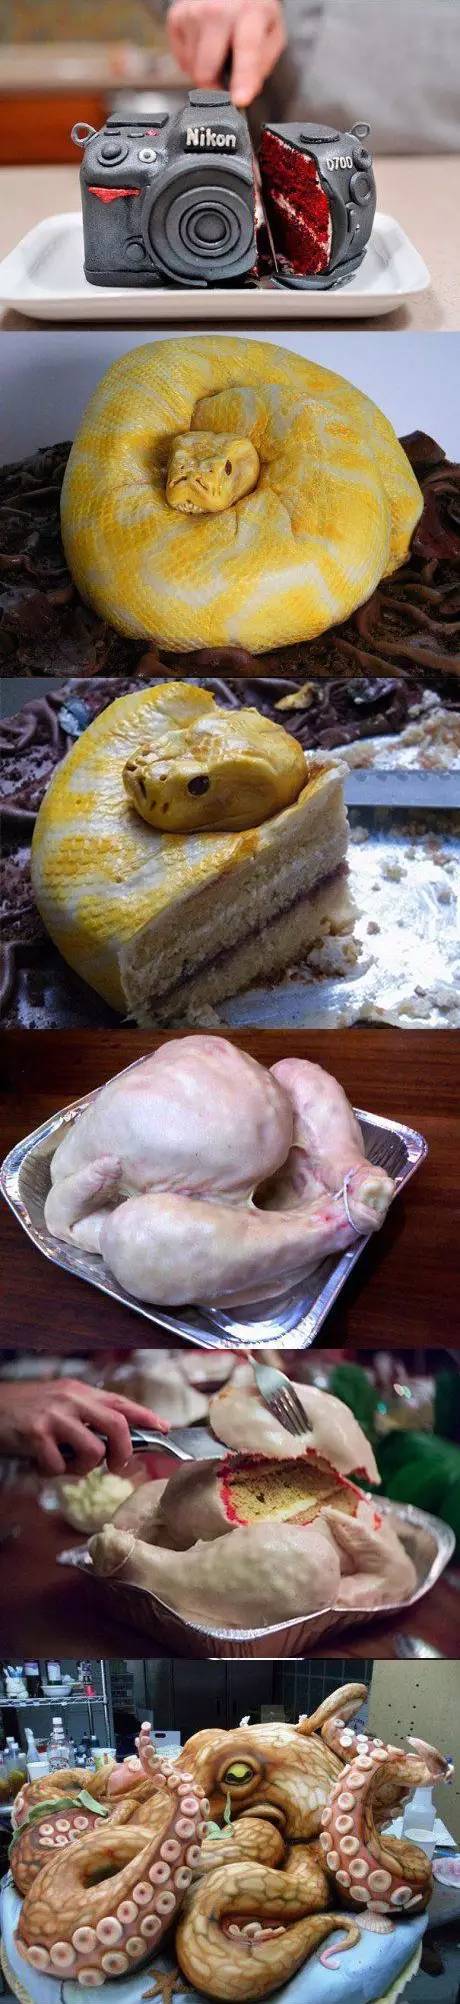 最奇葩的蛋糕 恶心图片